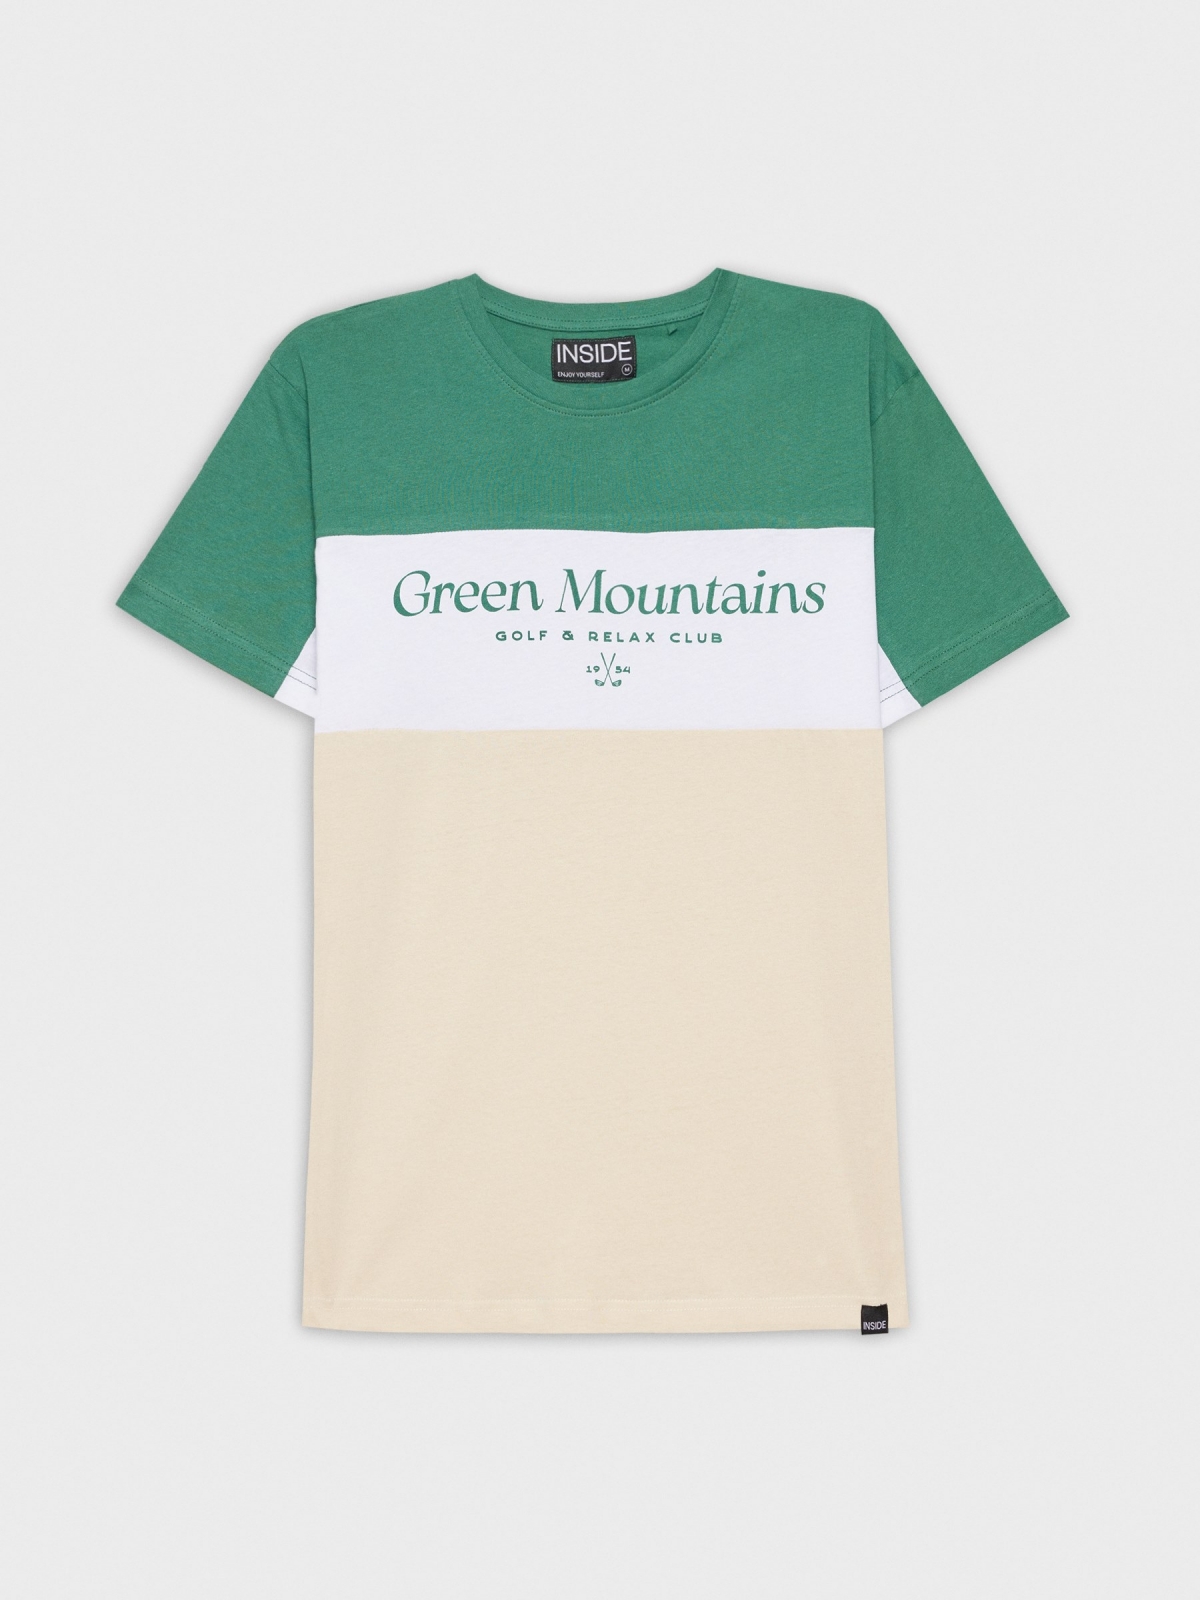  Camiseta Green Mountains arena